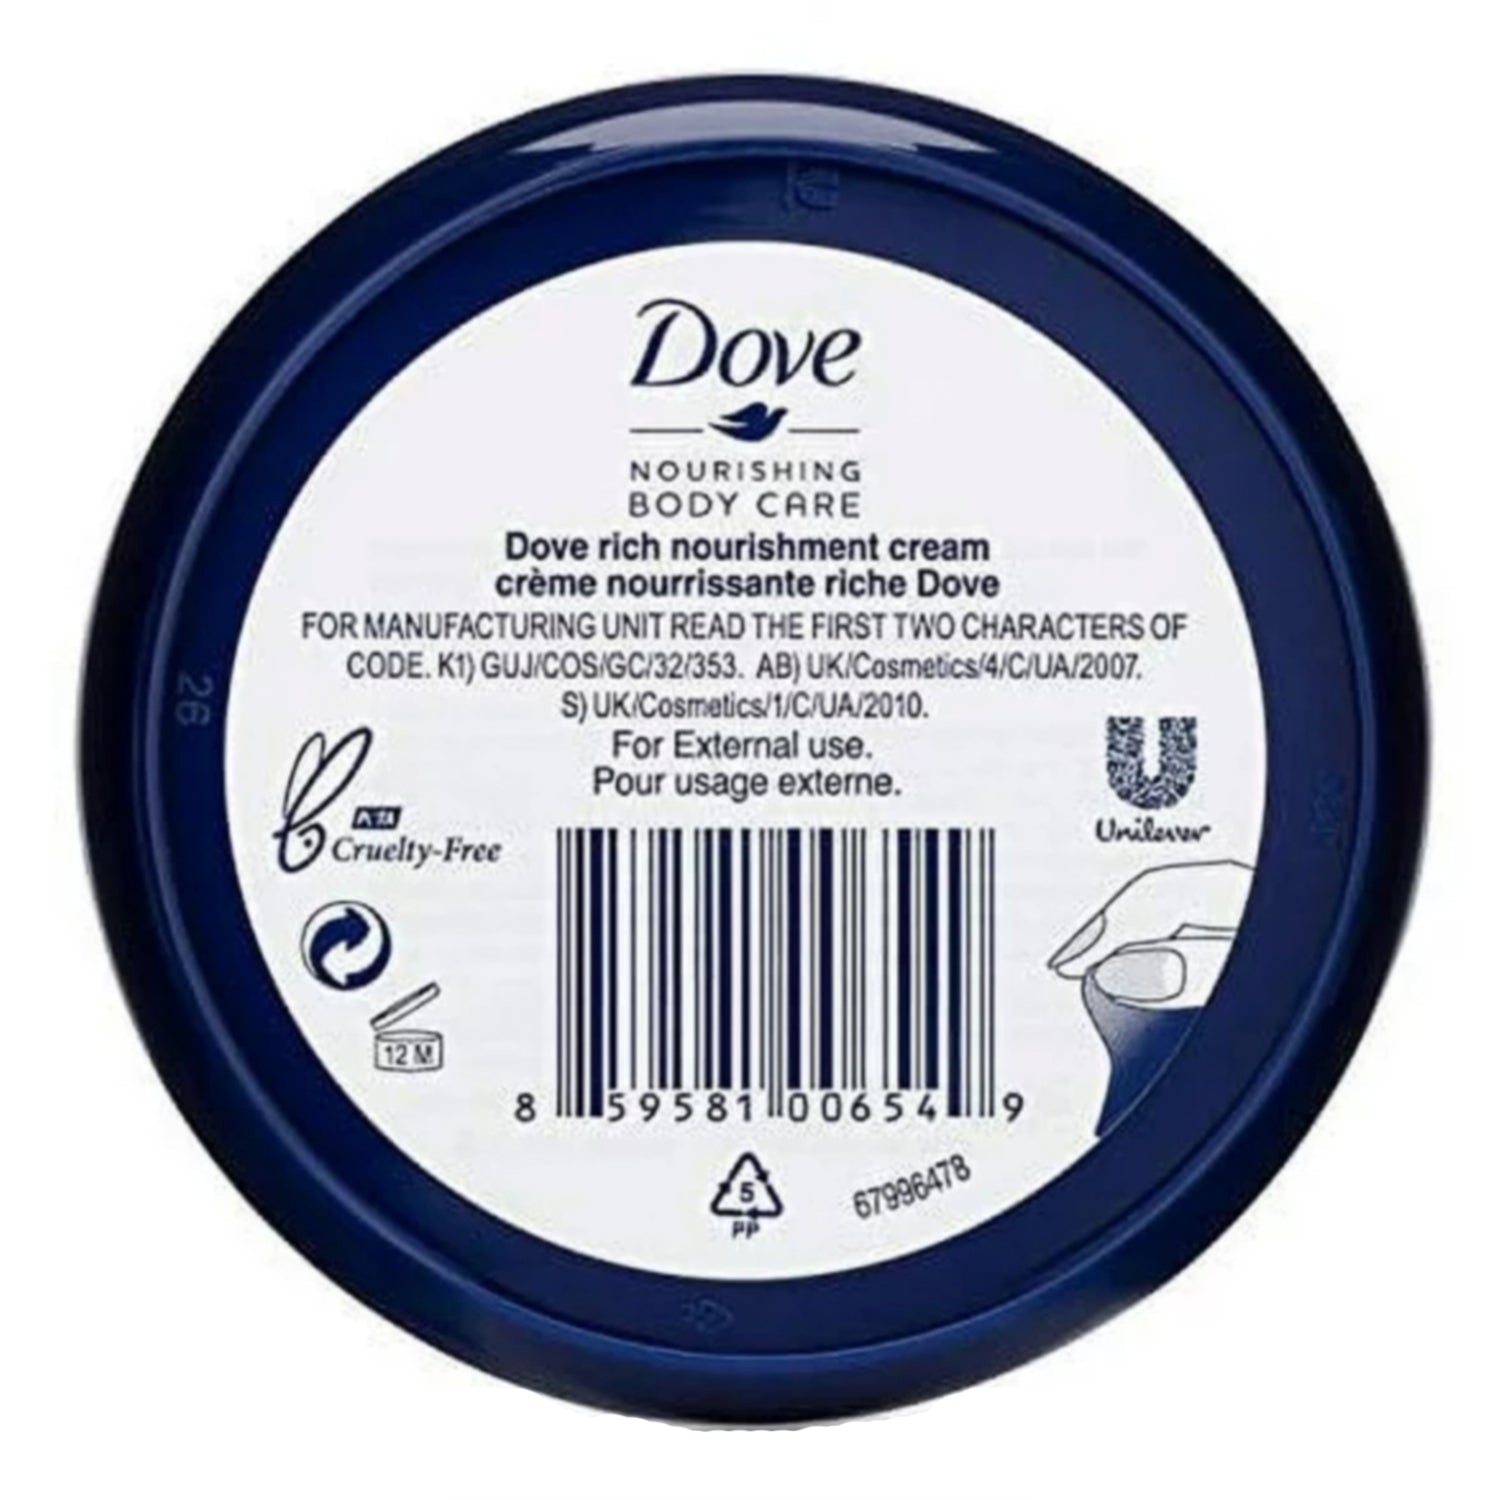 Dove Nourishing Body Care Cream Rich 8.45oz 250ml